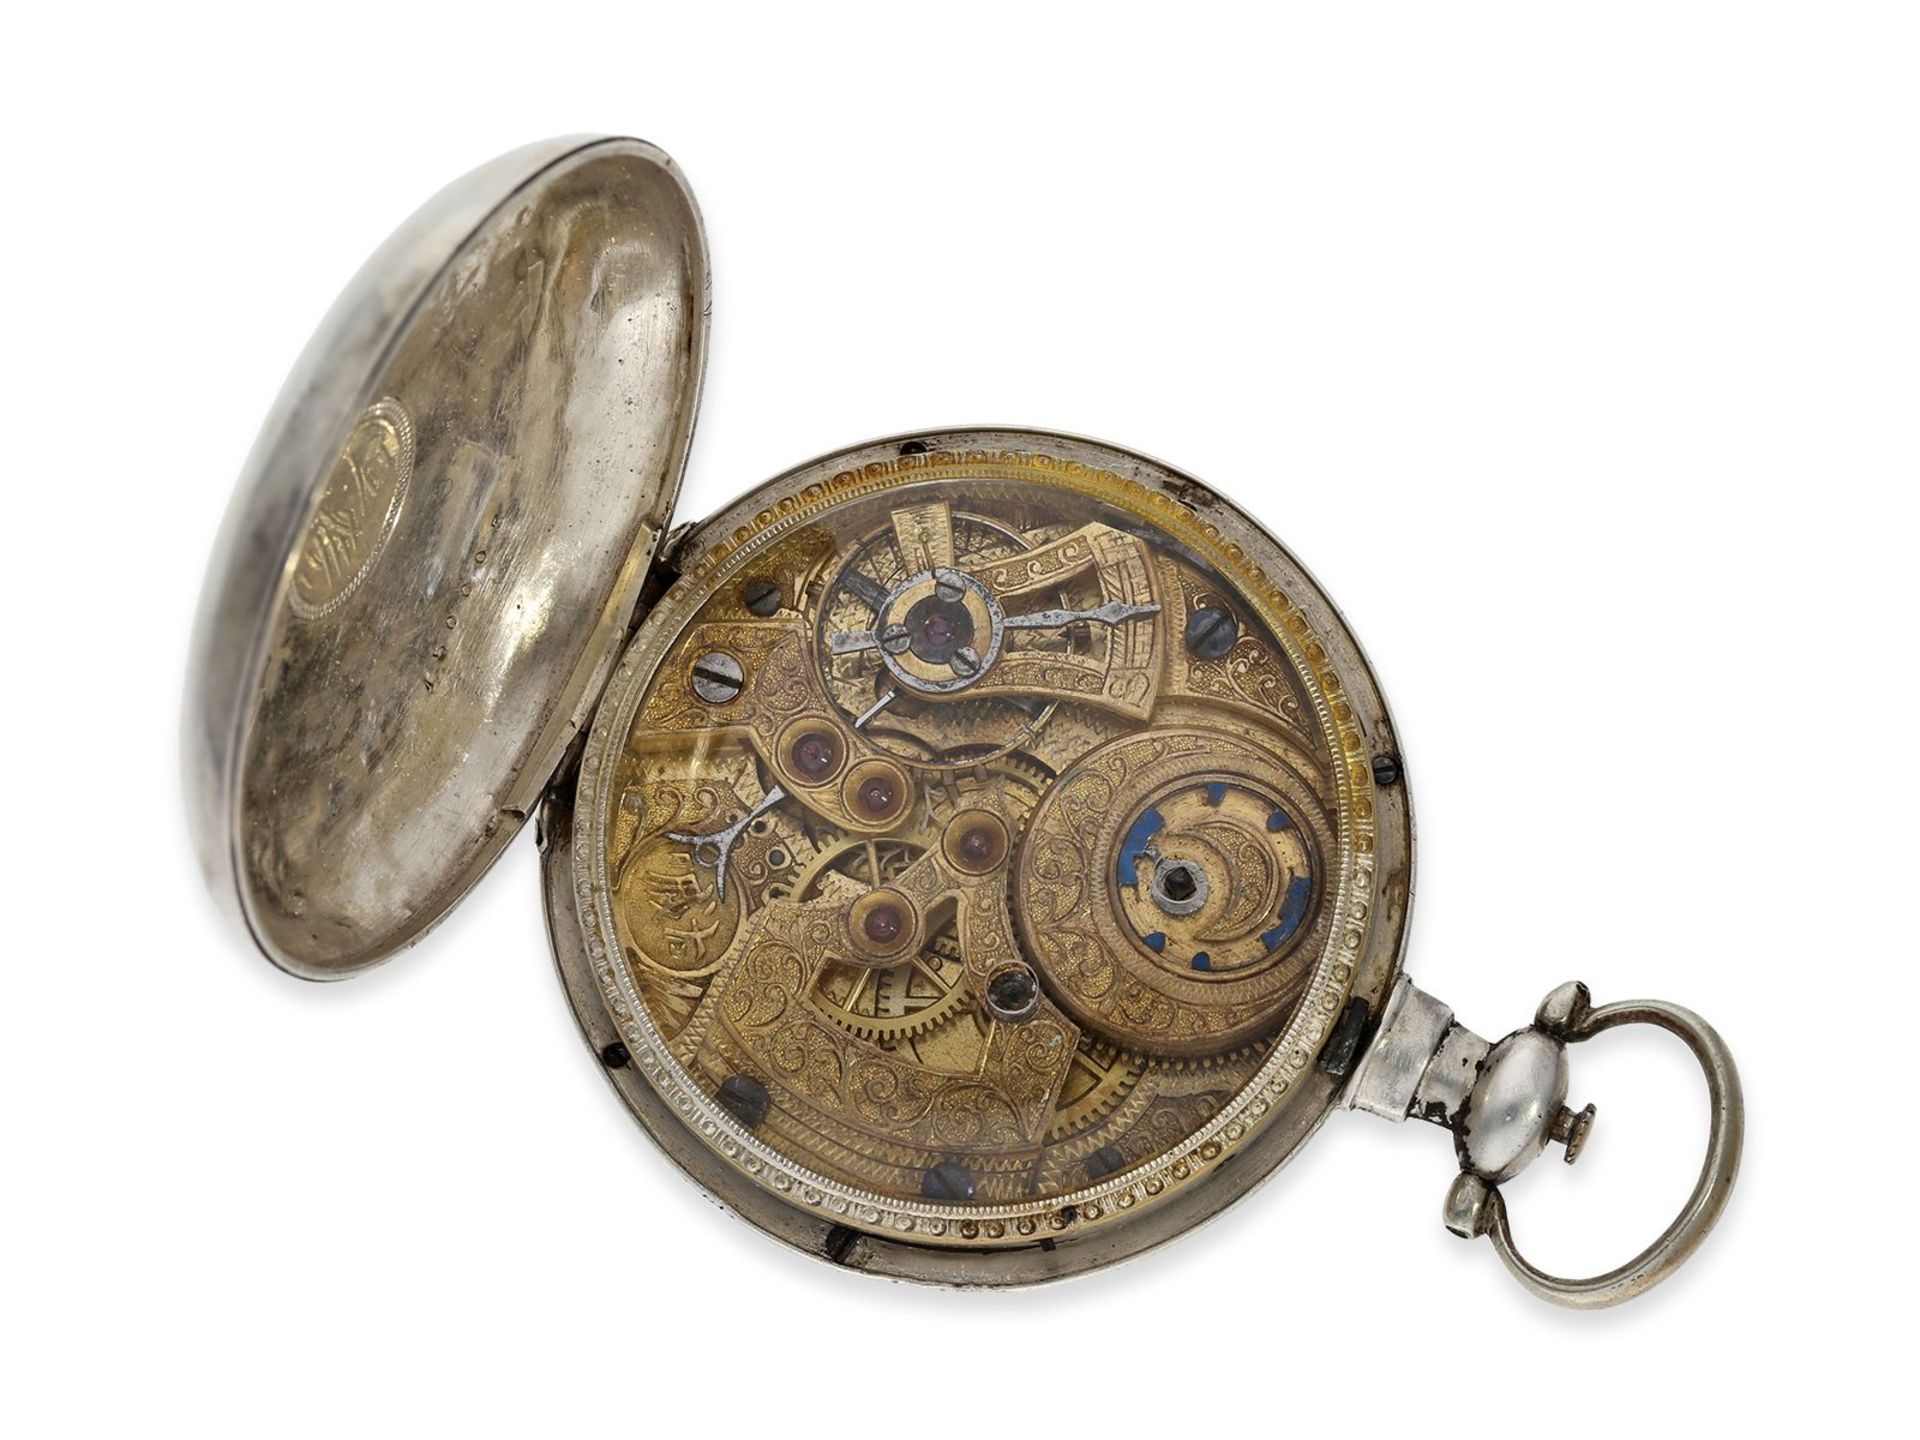 Taschenuhr: sehr seltene Taschenuhr für den chinesischen Markt mit sog. "Zodiac-Dial", Leo Juvet - Bild 2 aus 3